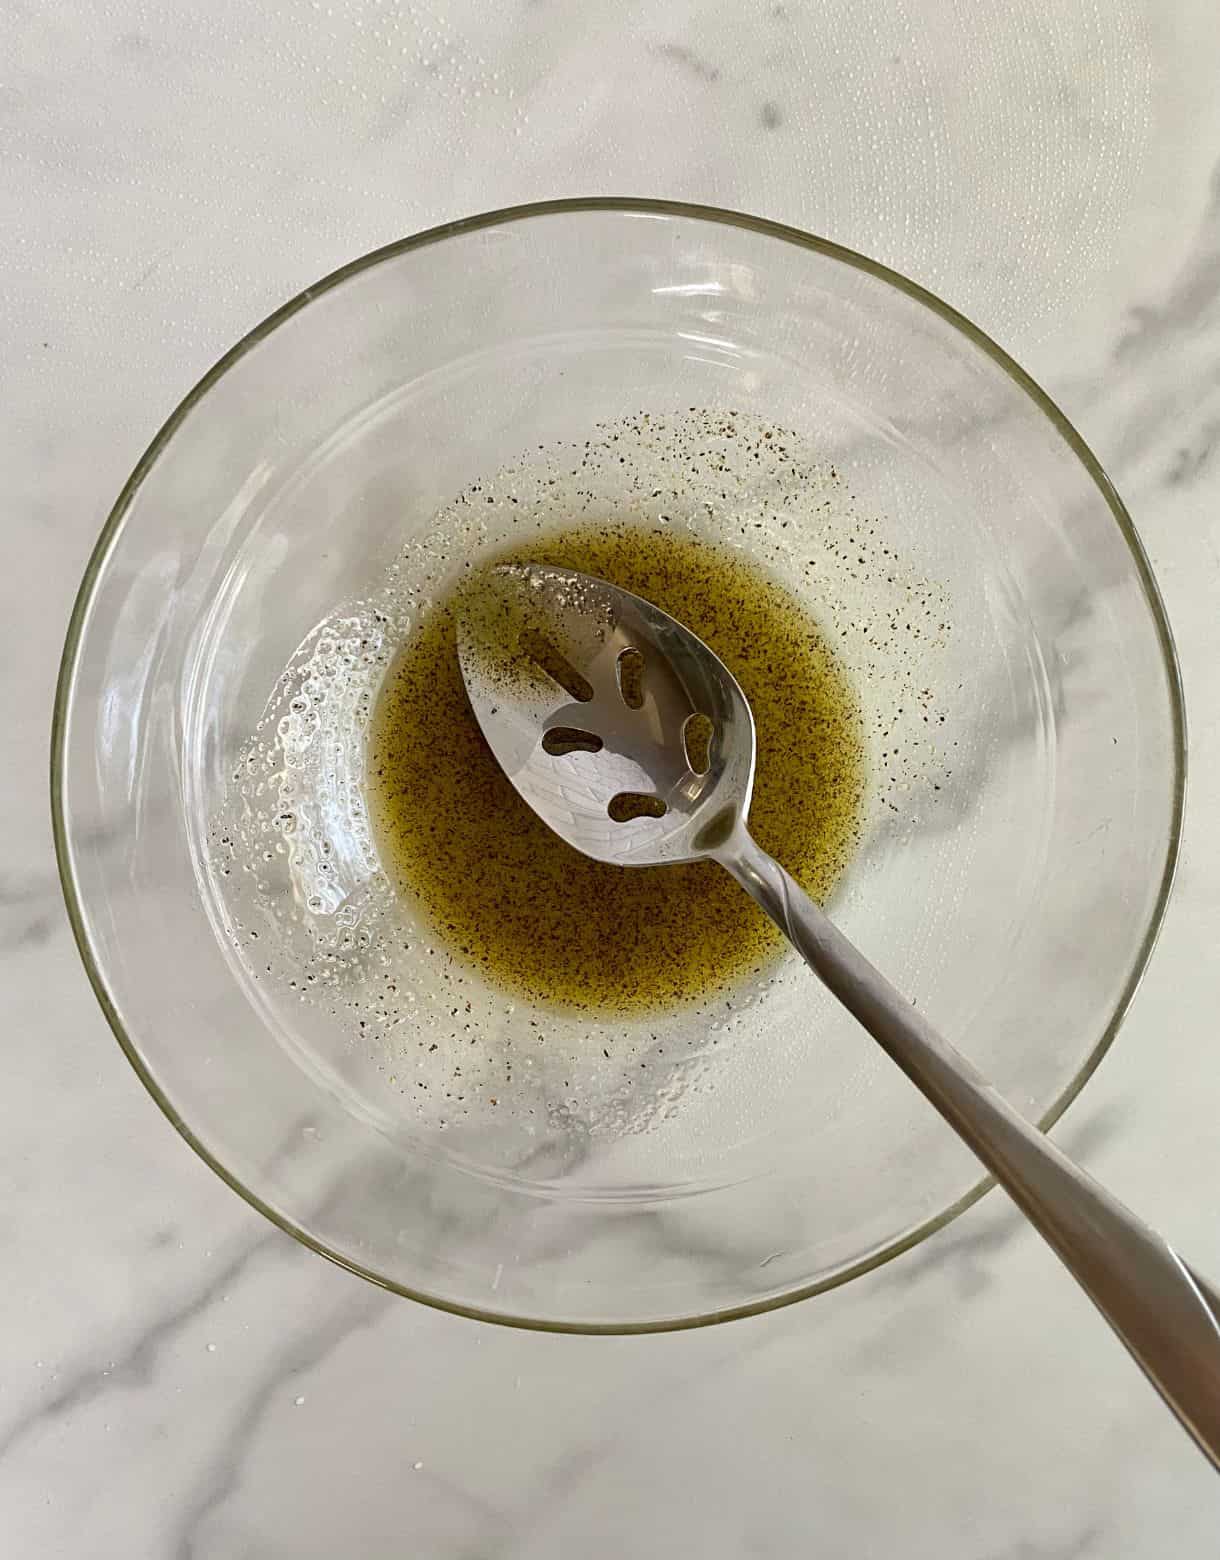 A bowl of olive oil, salt and pepper stirred together.